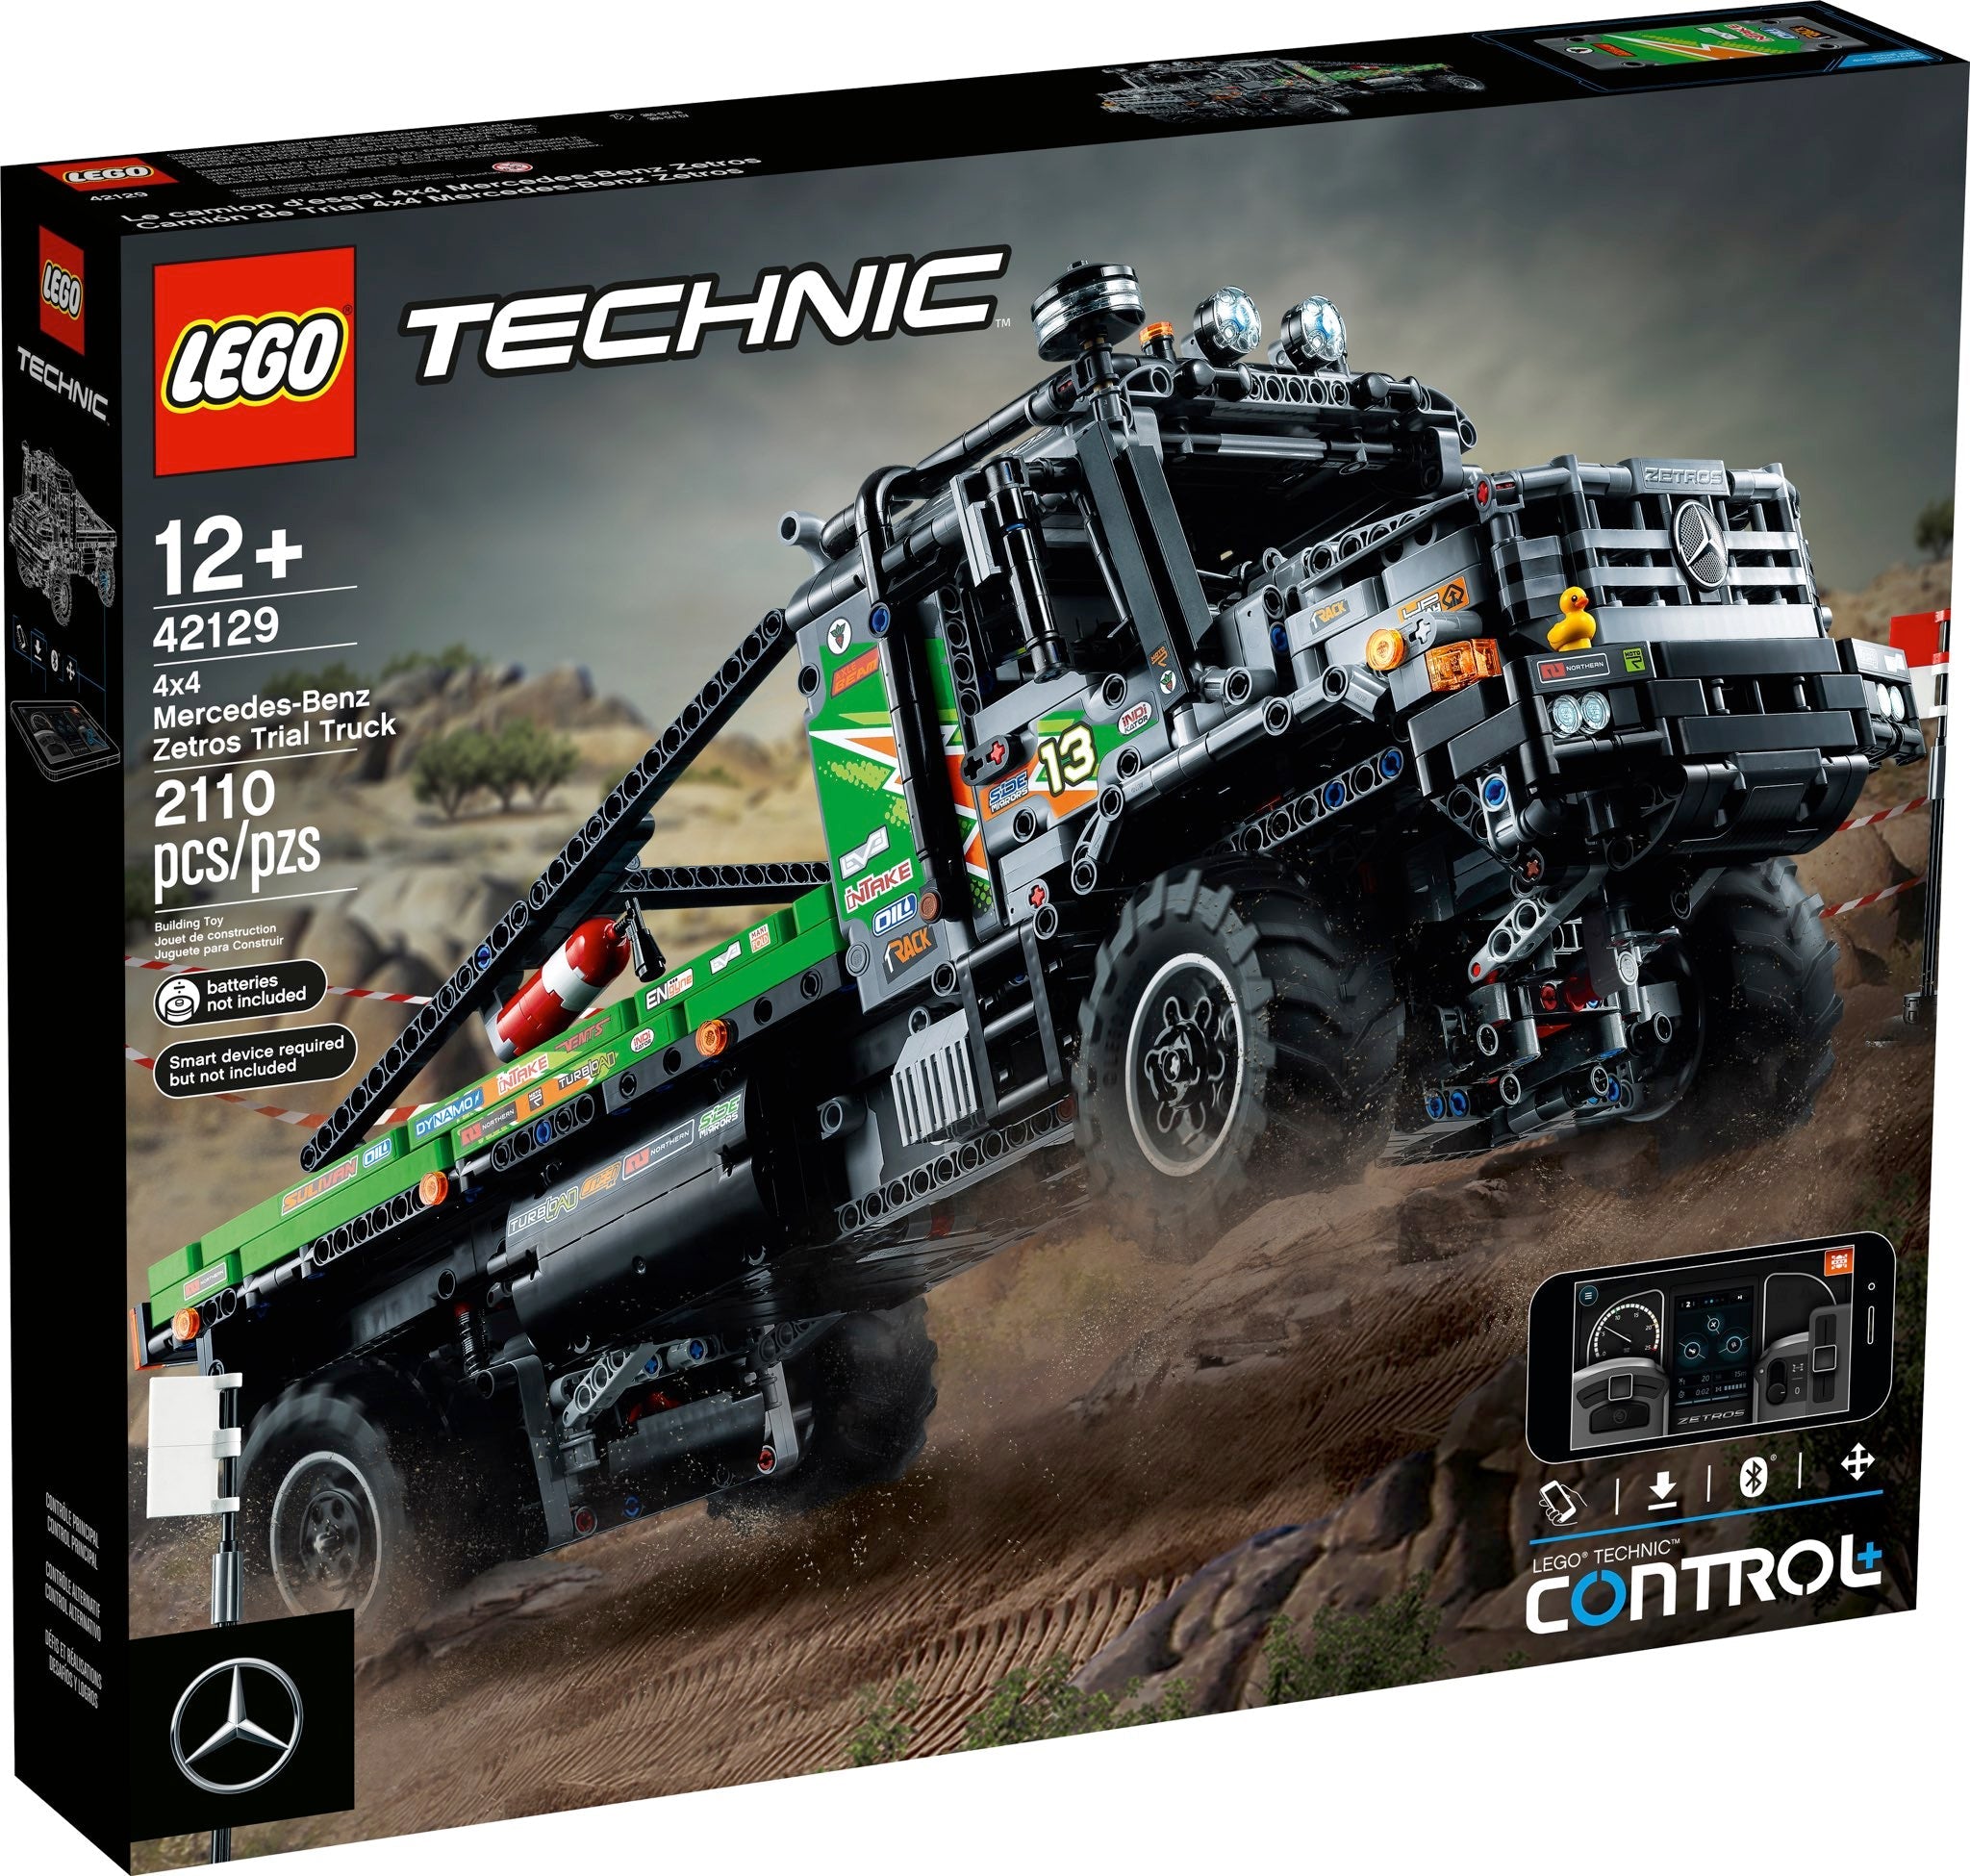 LEGO Technic - 4x4 Mercedes-Benz Zetros Offroad-Truck (42129) - im GOLDSTIEN.SHOP verfügbar mit Gratisversand ab Schweizer Lager! (5702016912845)